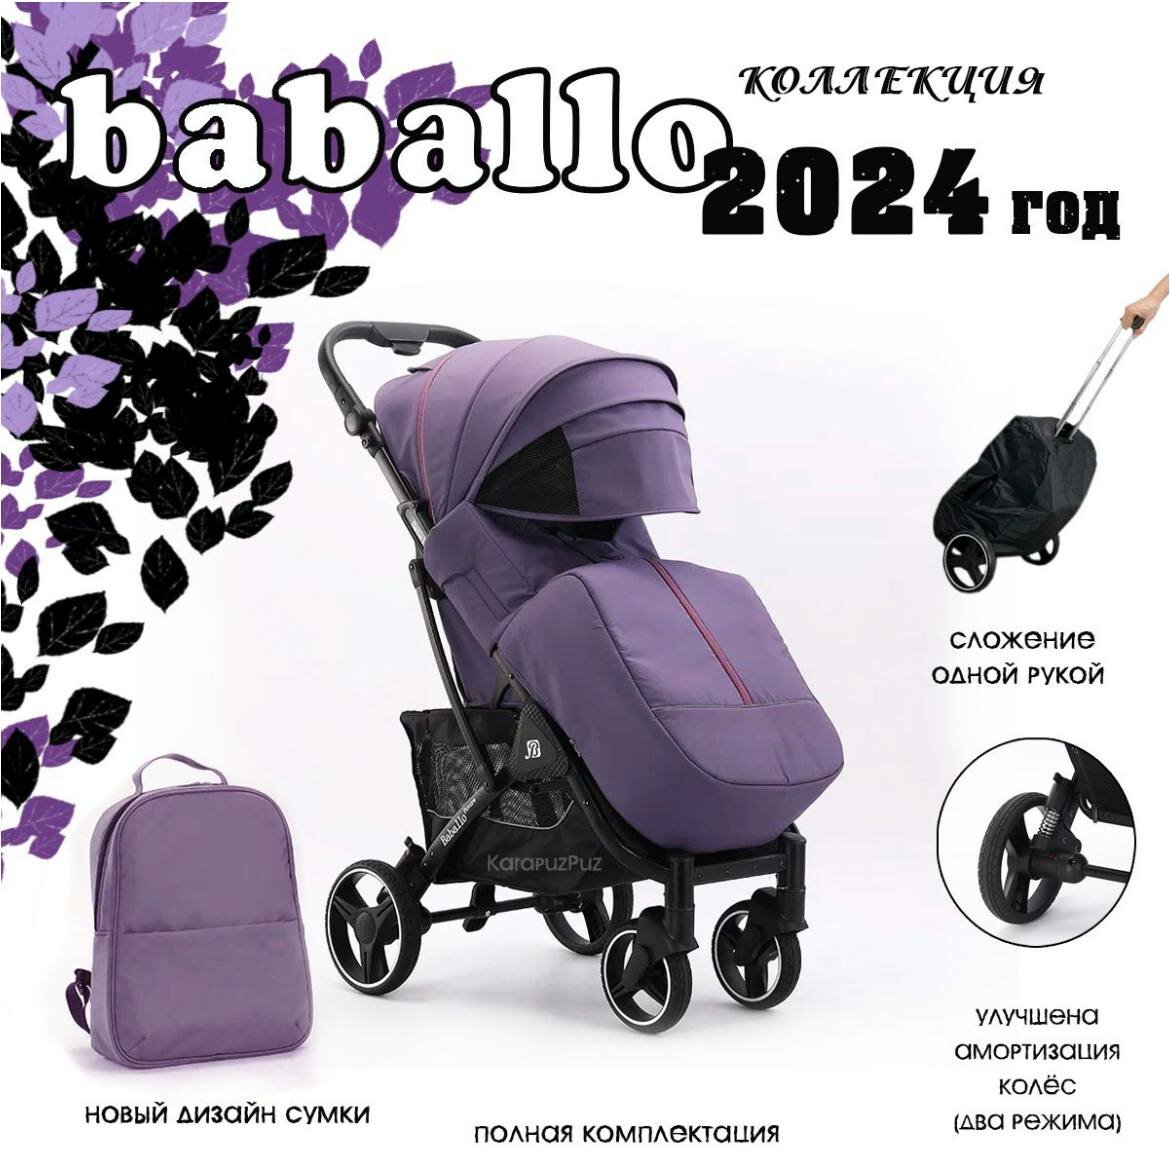 Детская прогулочная коляска Baballo future 2024, Бабало фиолетовый на черной раме, механическая спинка, сумка-рюкзак в комплекте